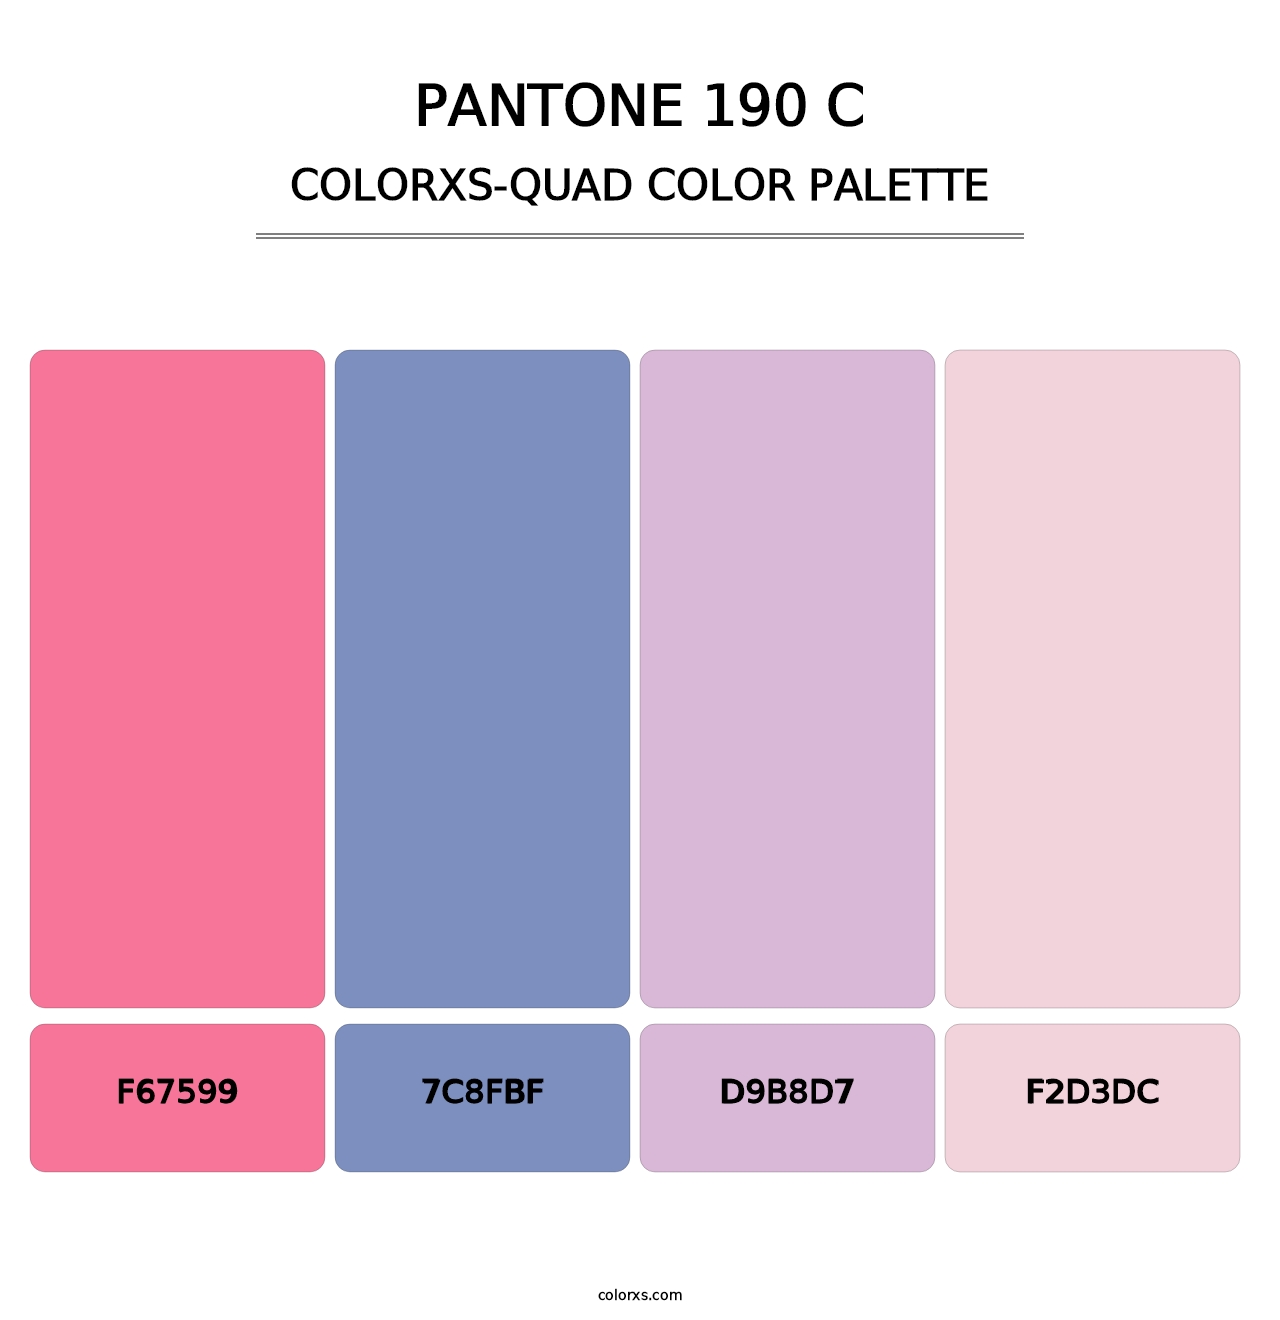 PANTONE 190 C - Colorxs Quad Palette